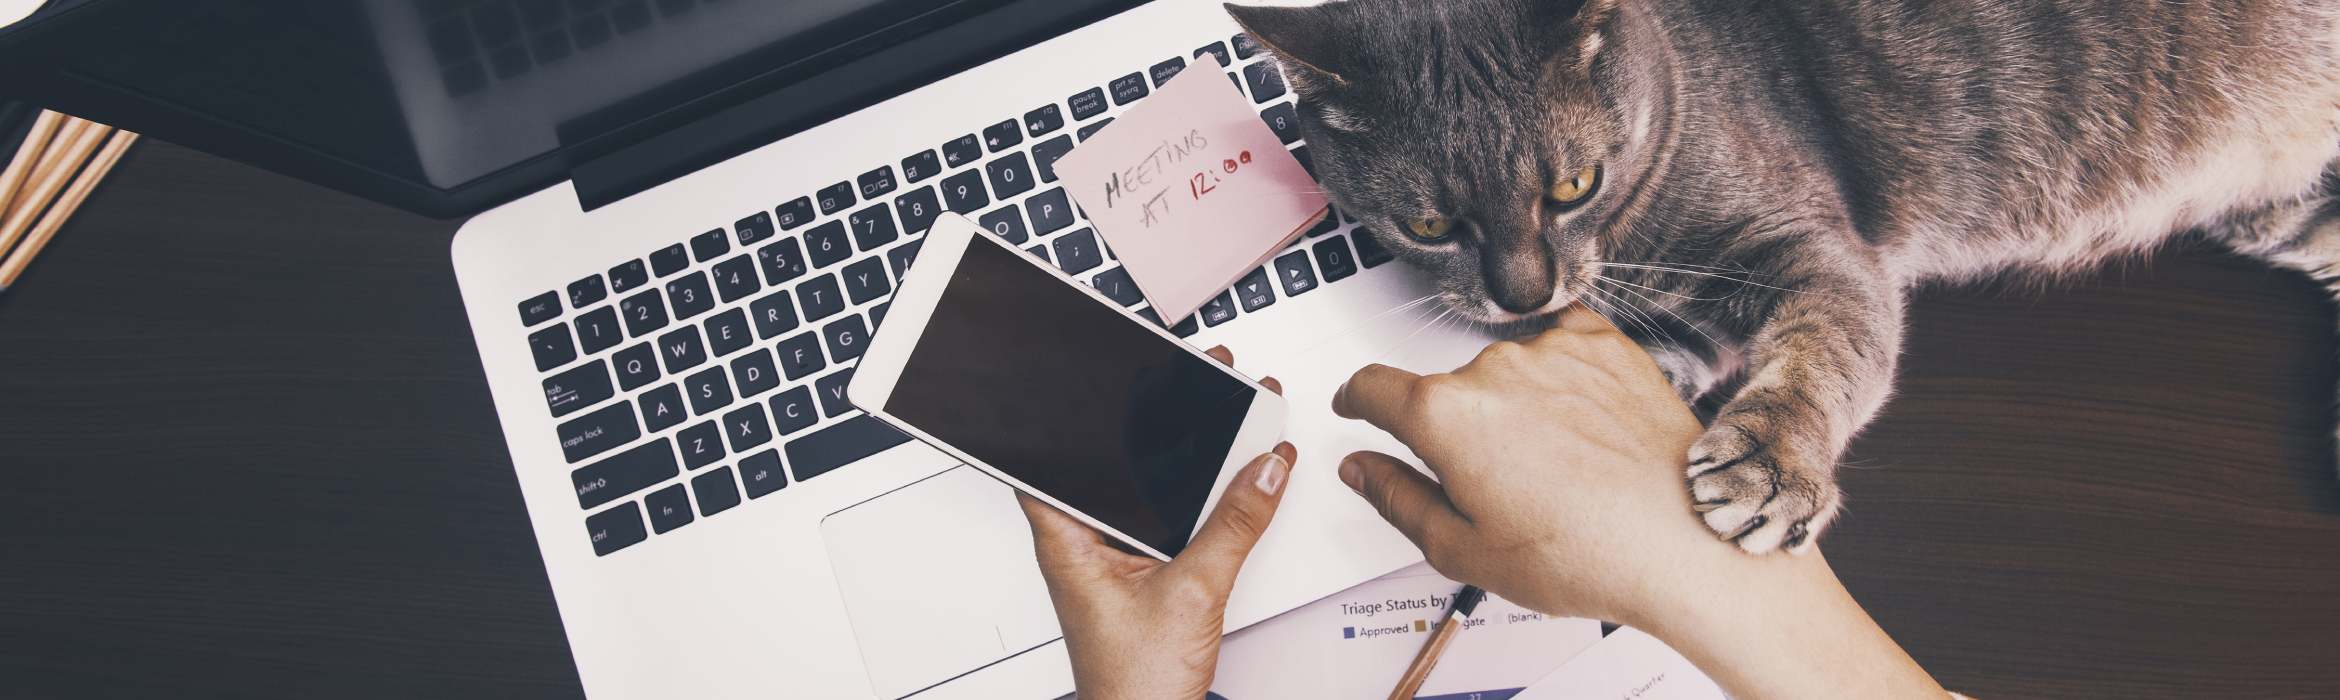 Bovenaanzicht van laptop, telefoon en handen遇见kat erbij